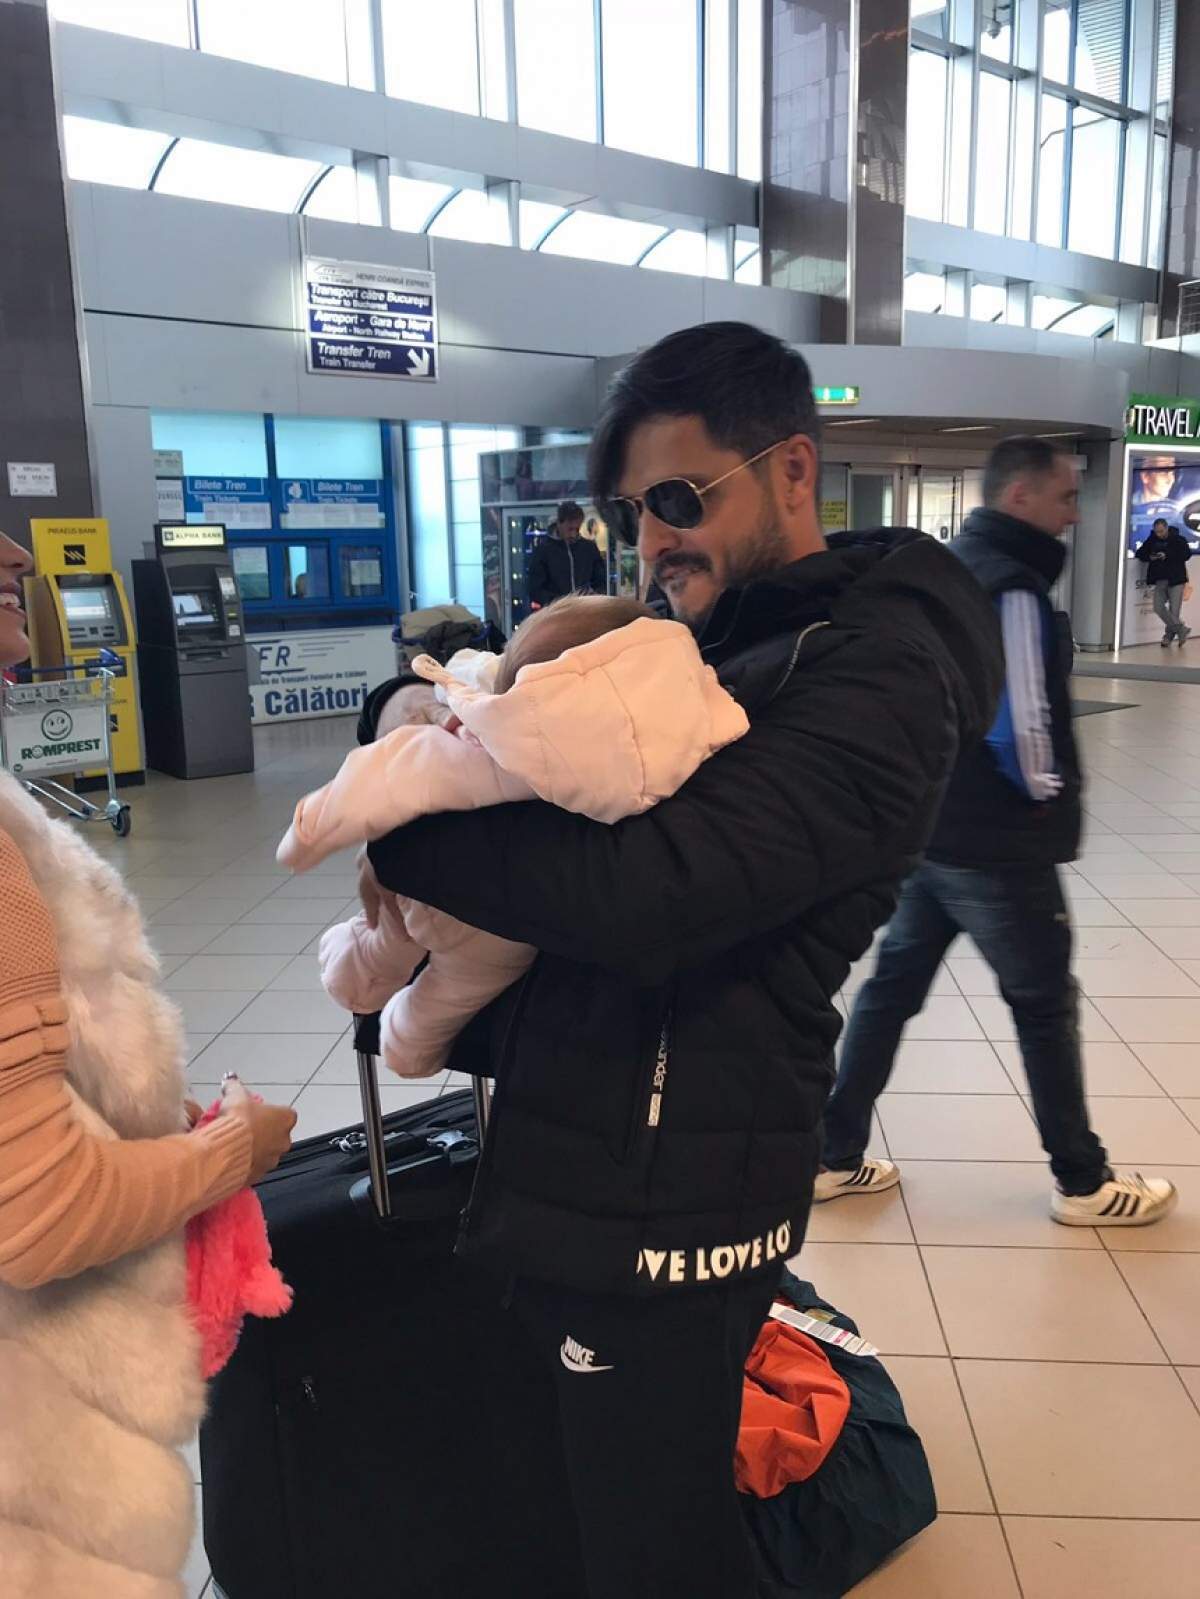 FOTO / Liviu Vârciu și Andrei Ștefănescu, primire emoționantă pe aeroport la întoarcerea din Asia! Cu lacrimi în ochi, şi-au strâns copiii în braţe